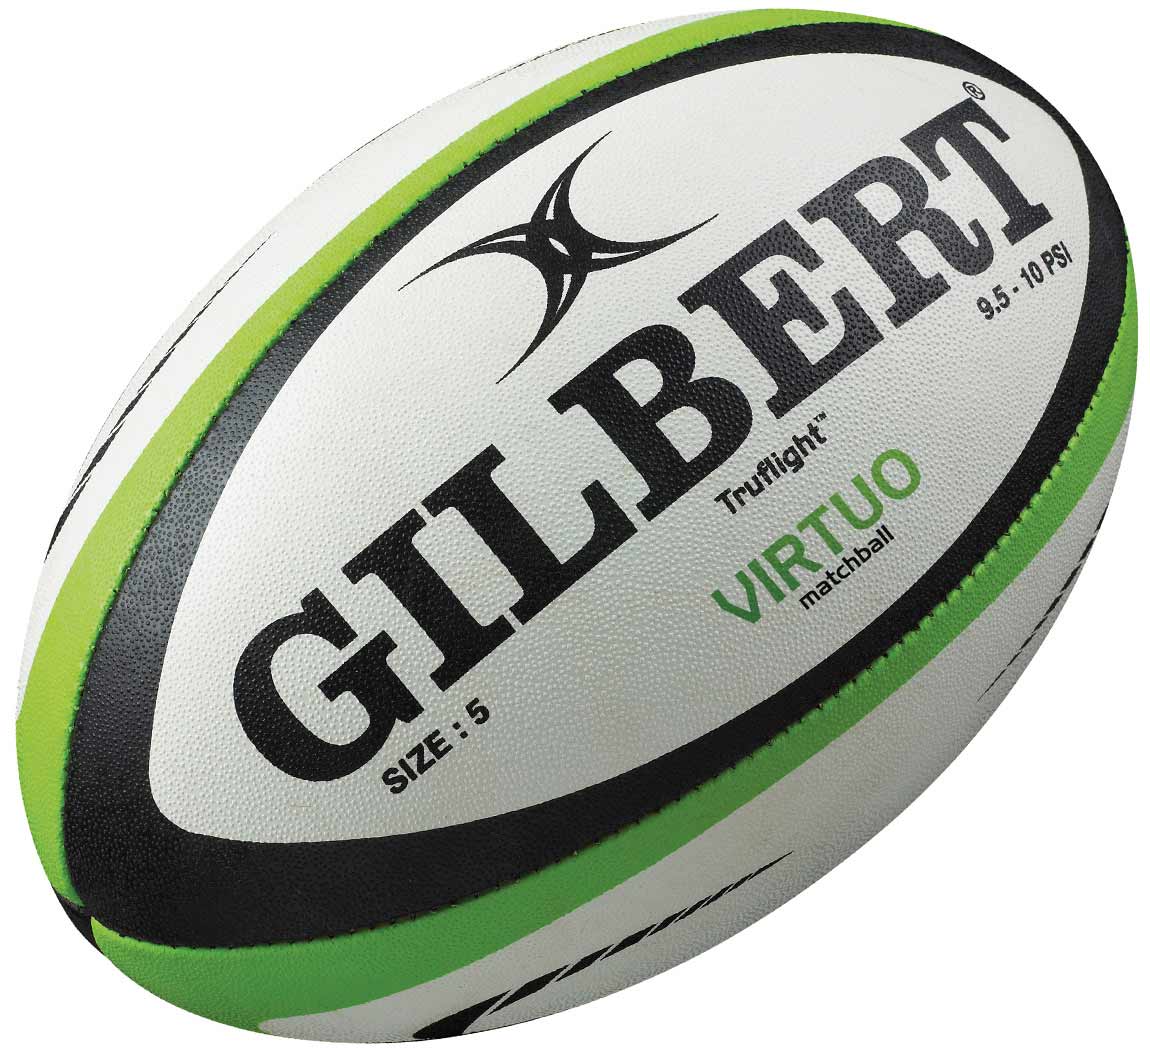 Gilbert Rugby Balls